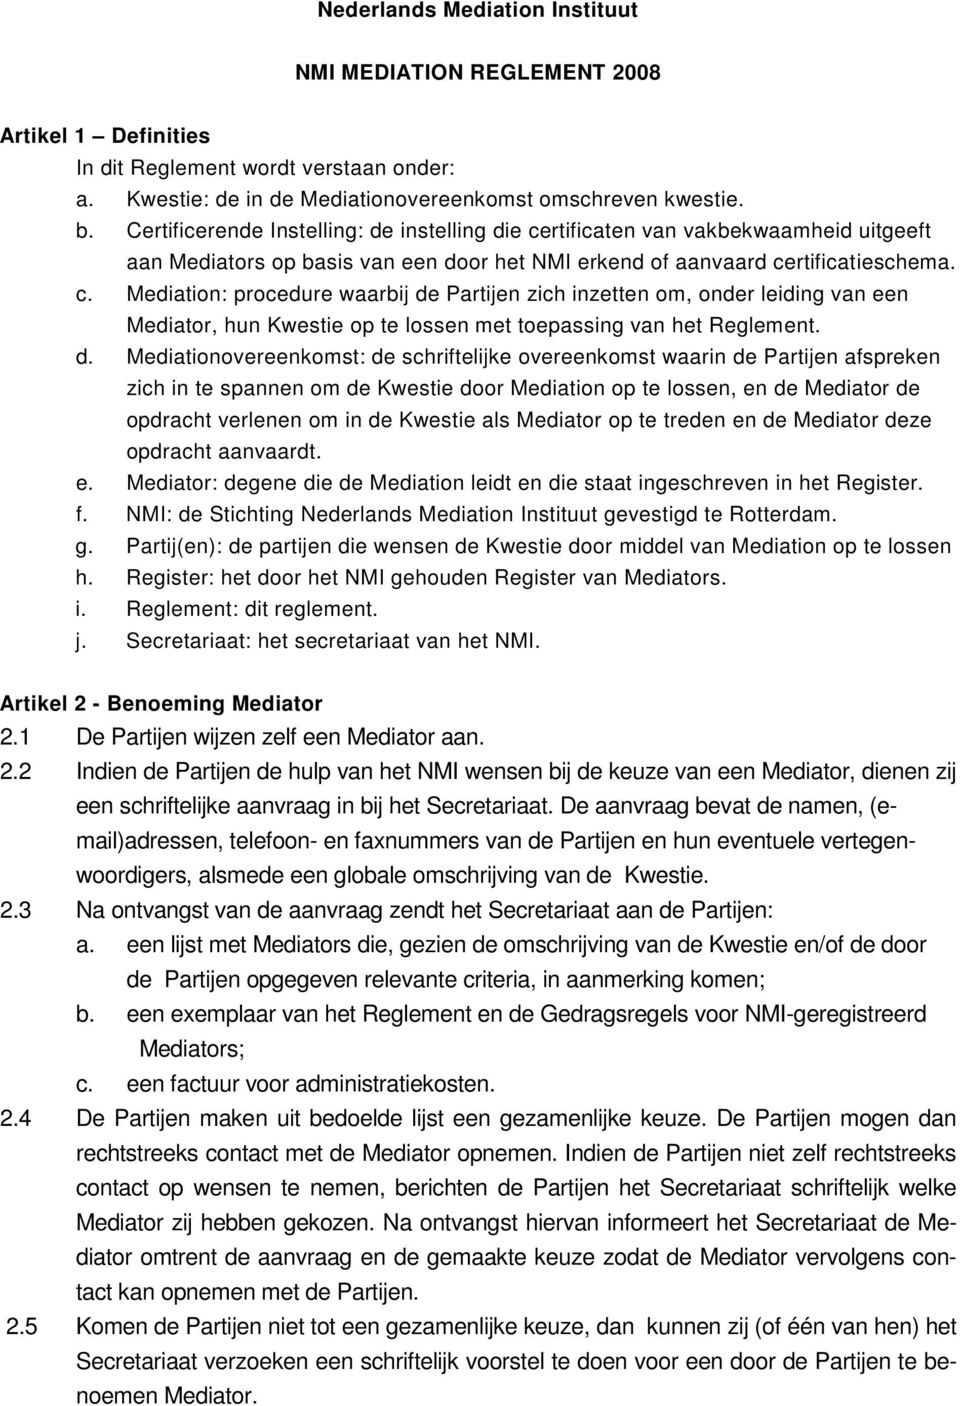 d. Mediationovereenkomst: de schriftelijke overeenkomst waarin de Partijen afspreken zich in te spannen om de Kwestie door Mediation op te lossen, en de Mediator de opdracht verlenen om in de Kwestie